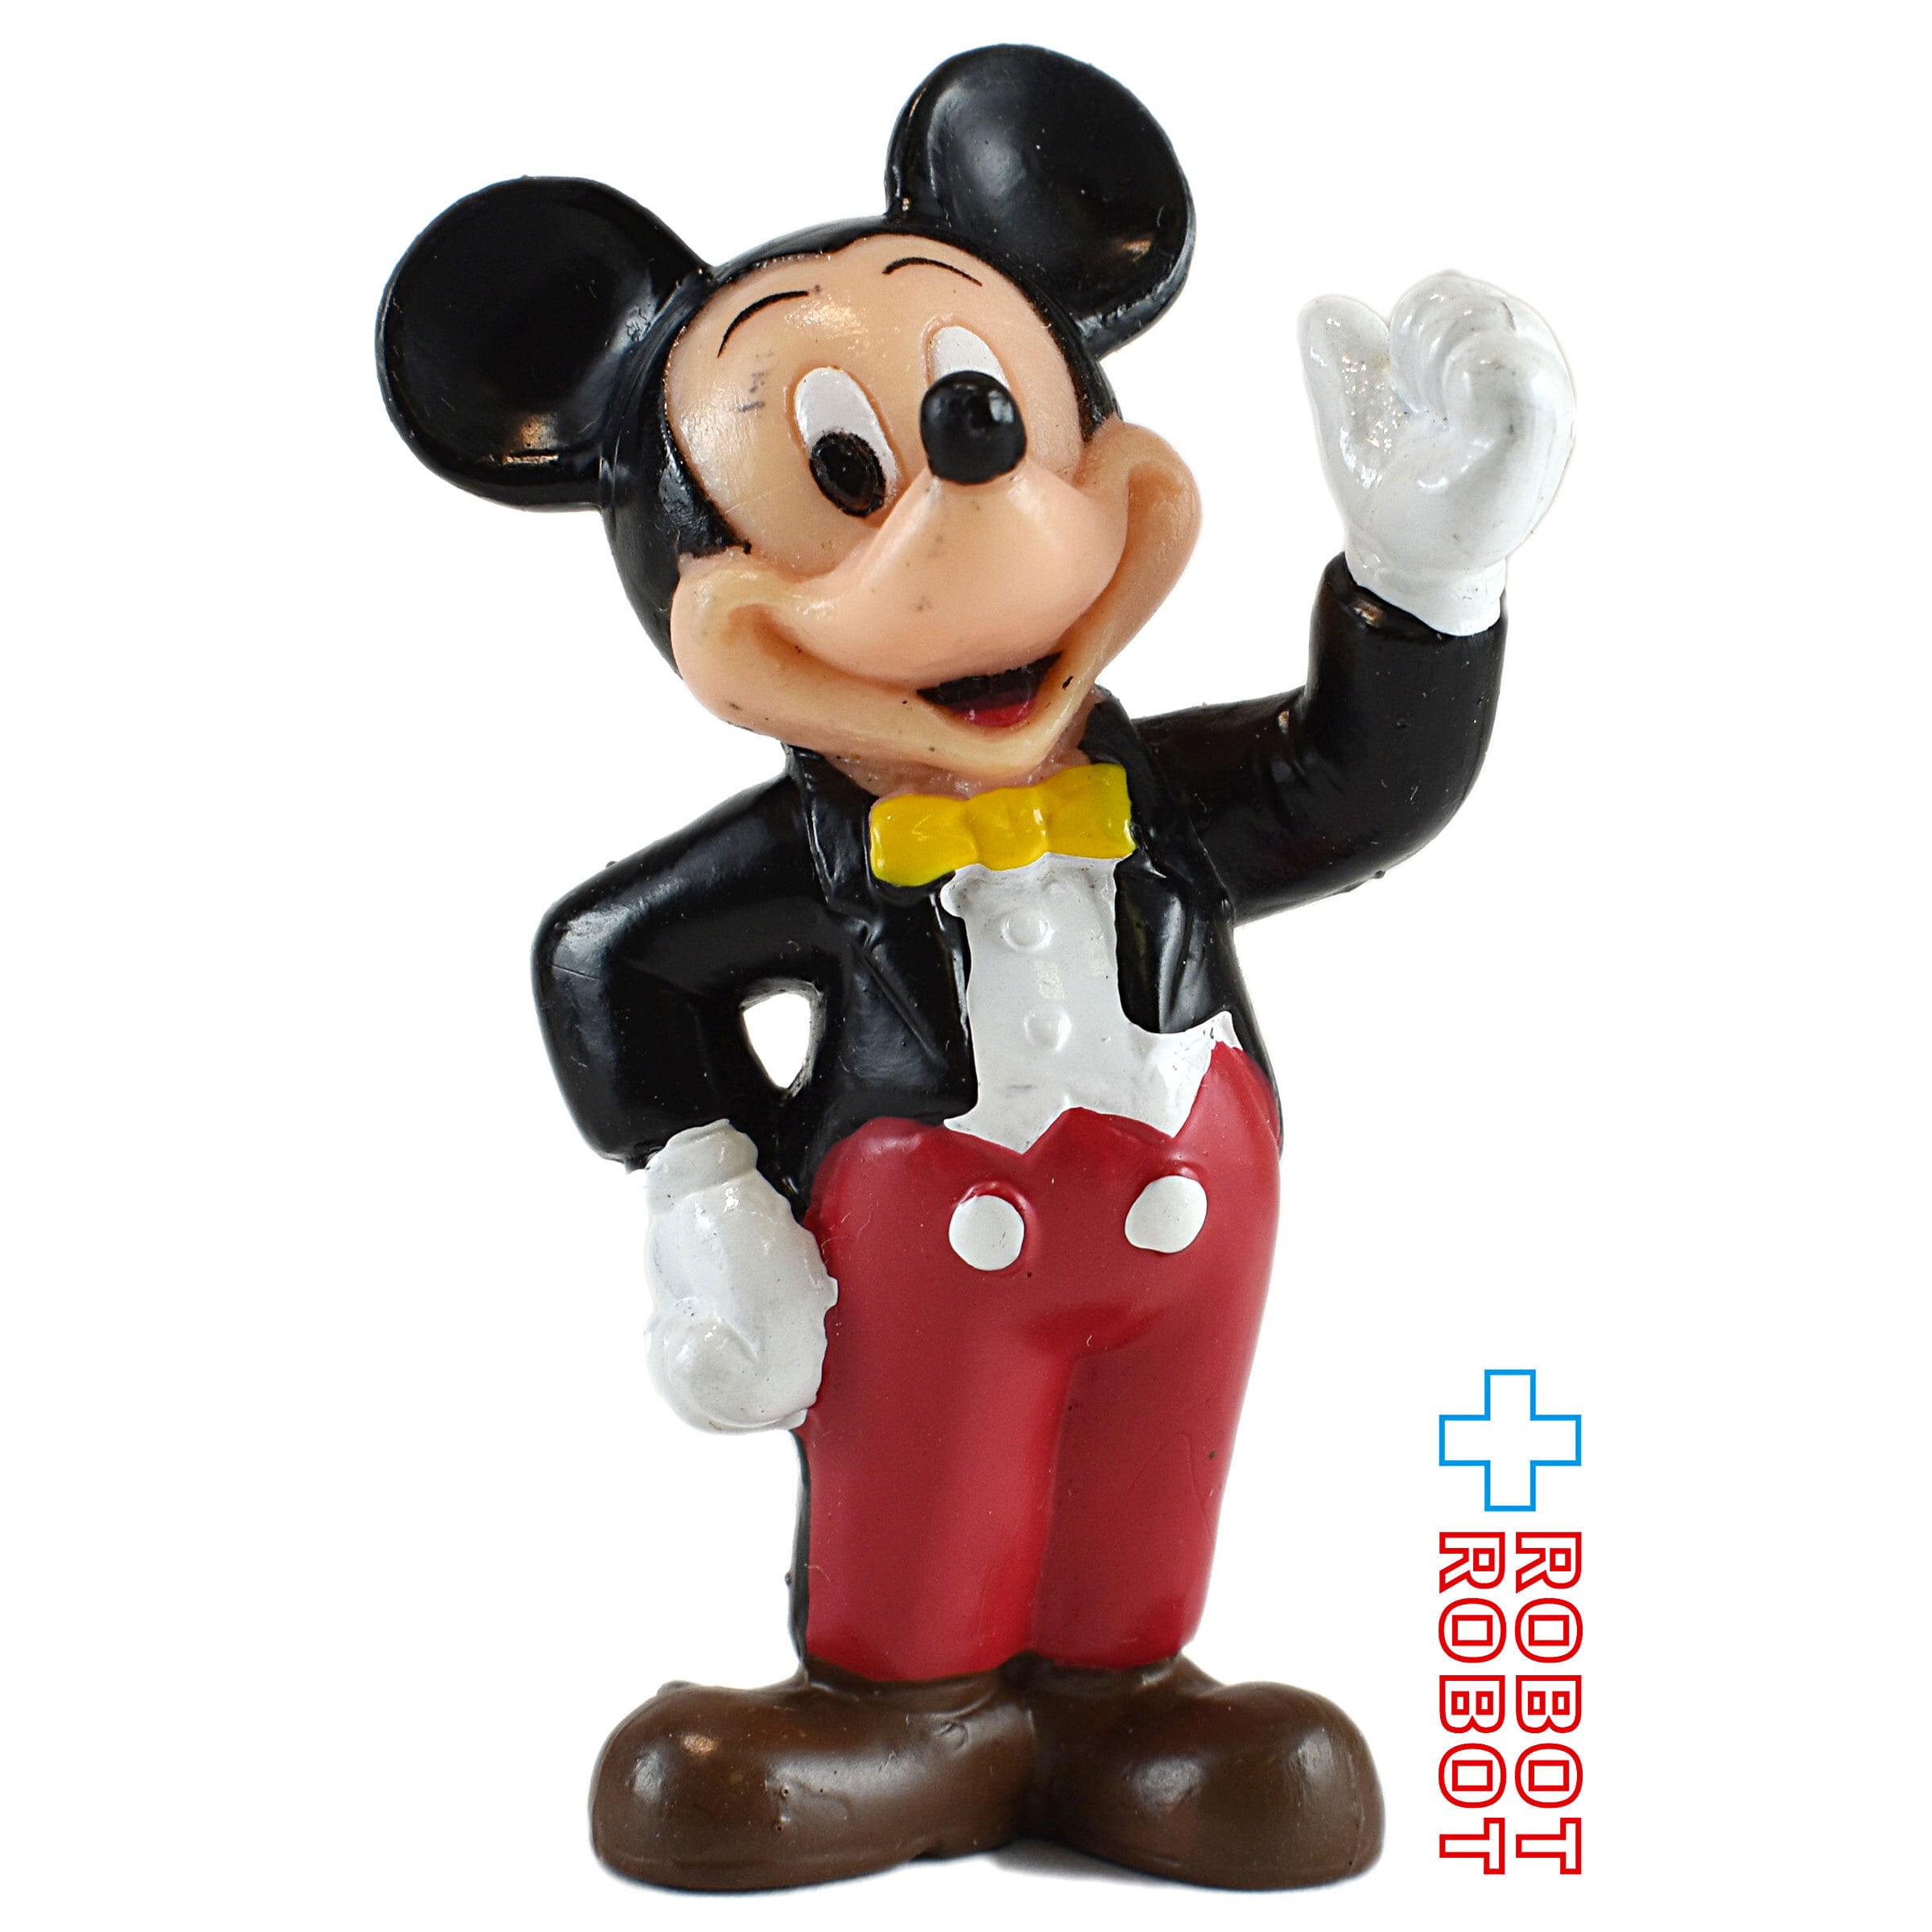 ディズニー生誕75周年記念 1000個限定 ミッキーマウス陶器フィギュア 